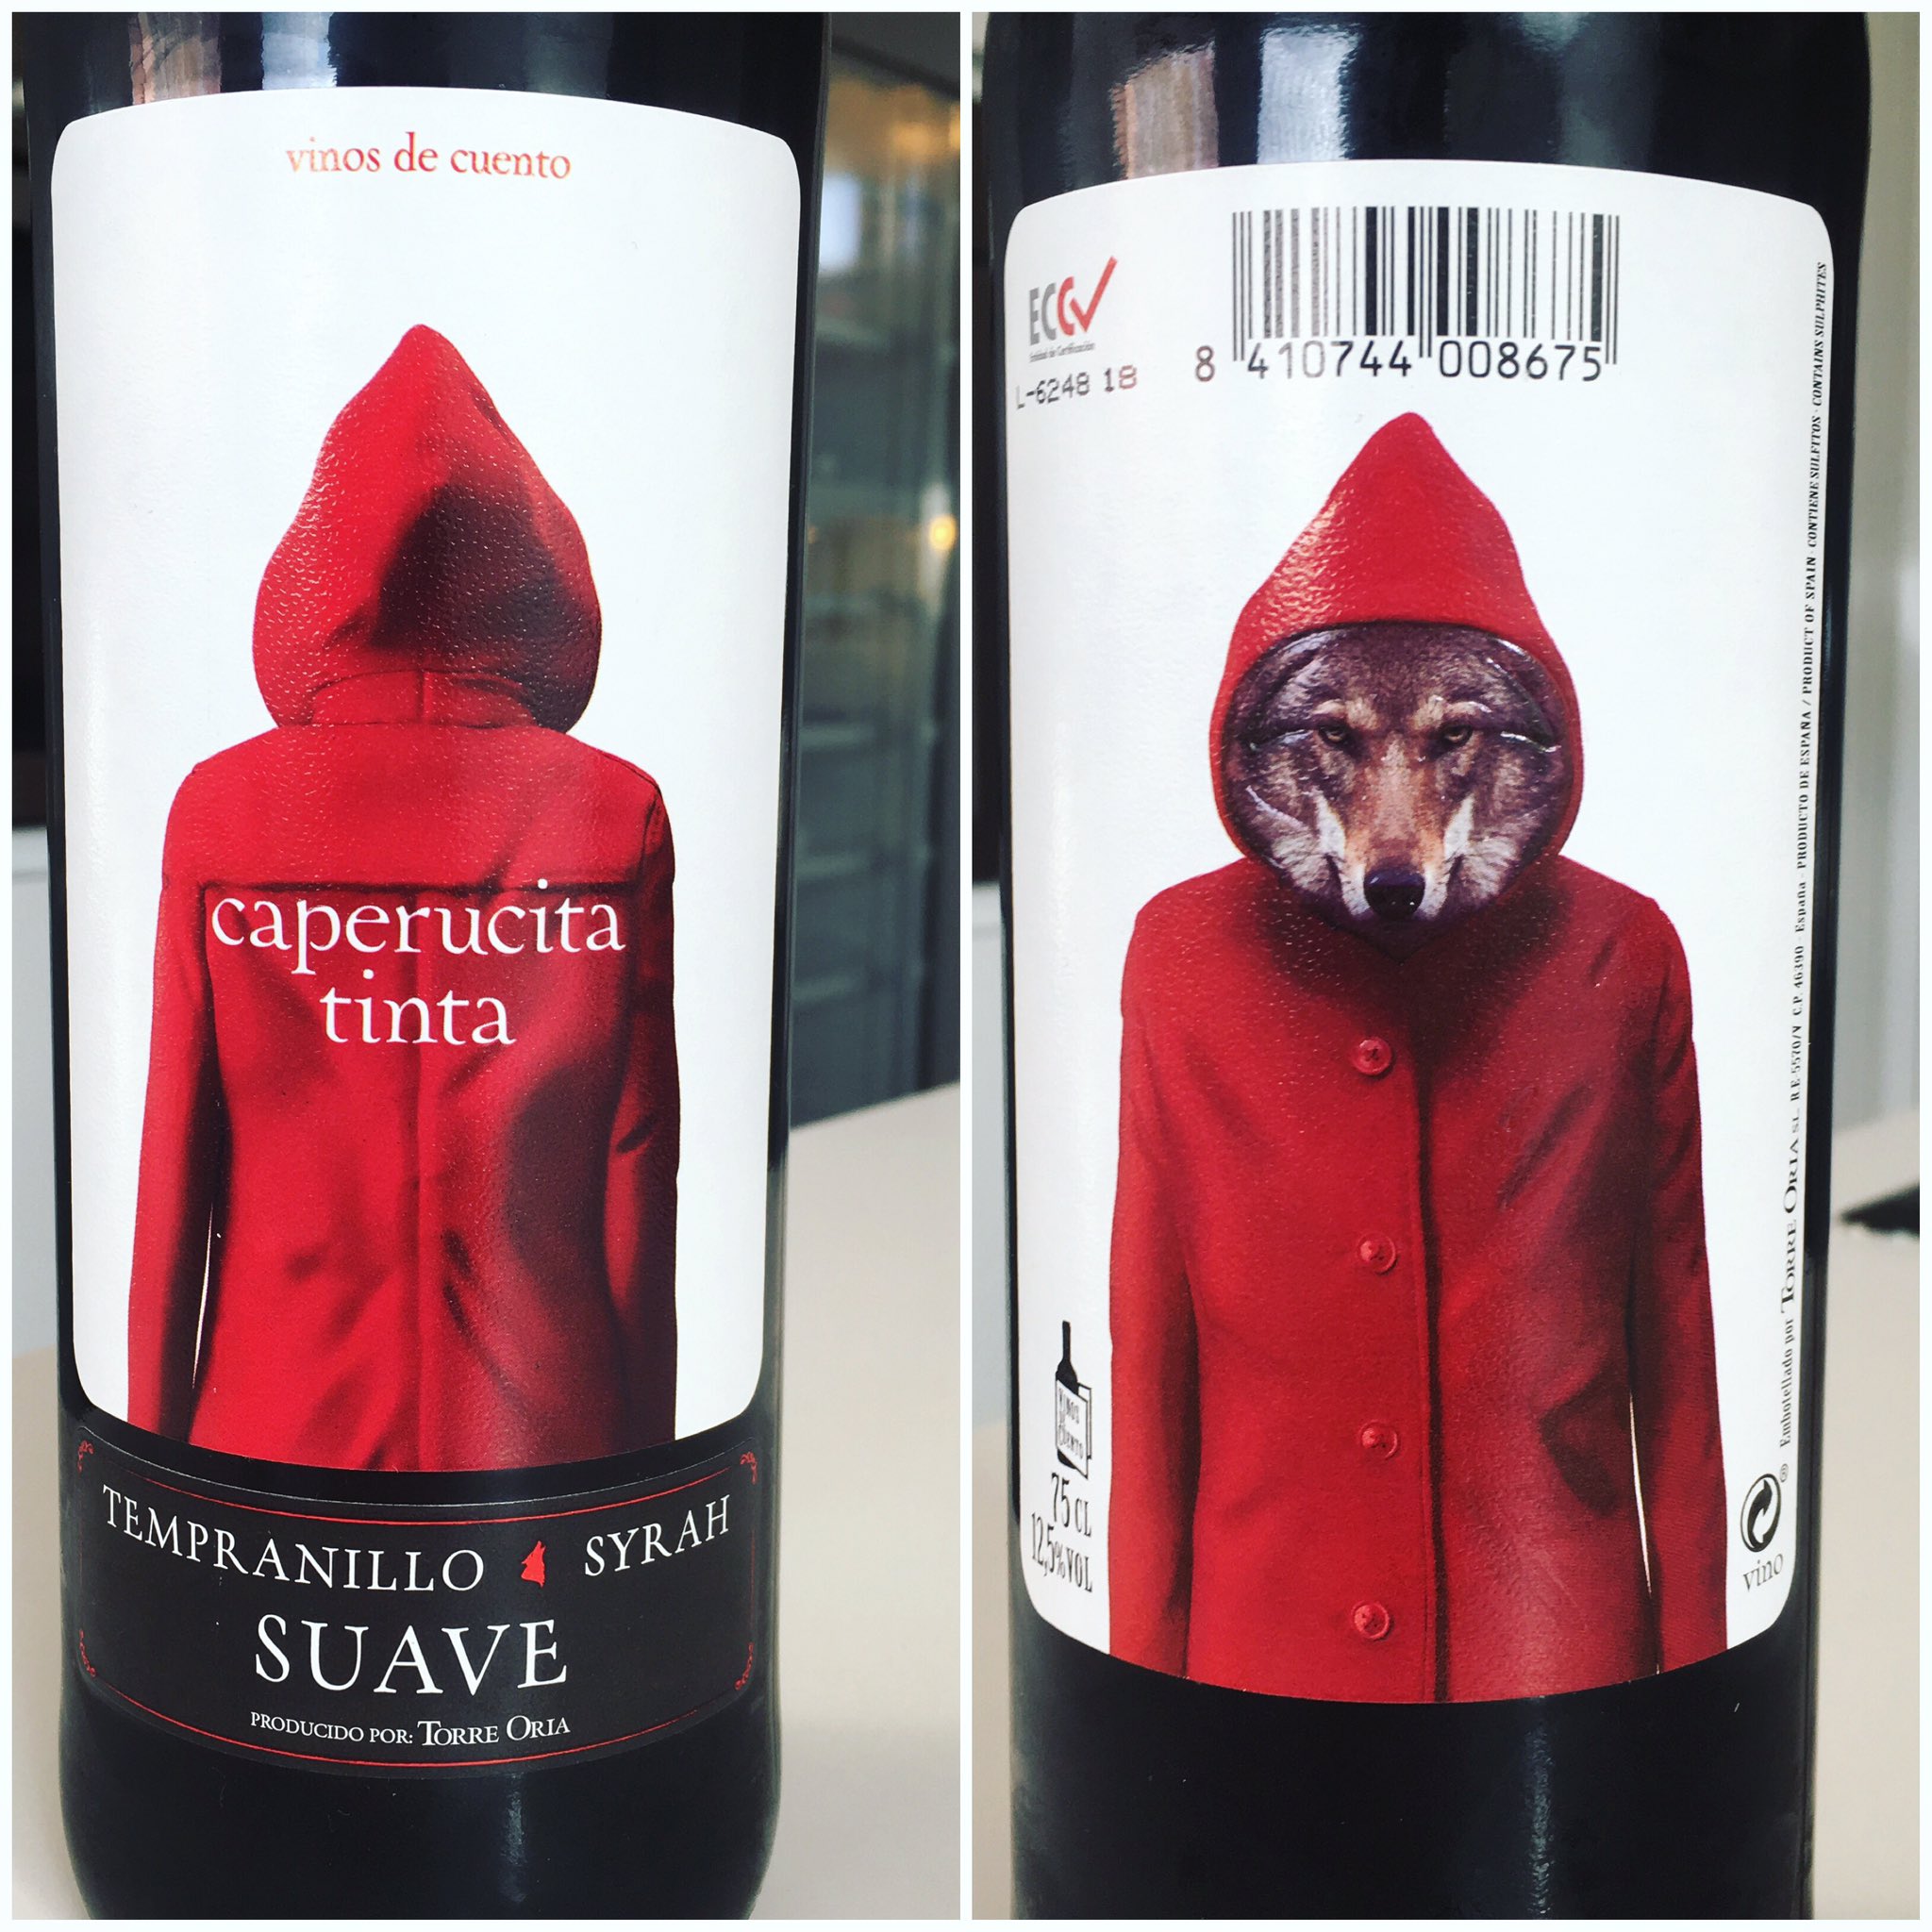 Arda on Twitter: "Caperucita Tinta #vinos de cuento #story #design #wine https://t.co/VoSa4ZVYpa" /